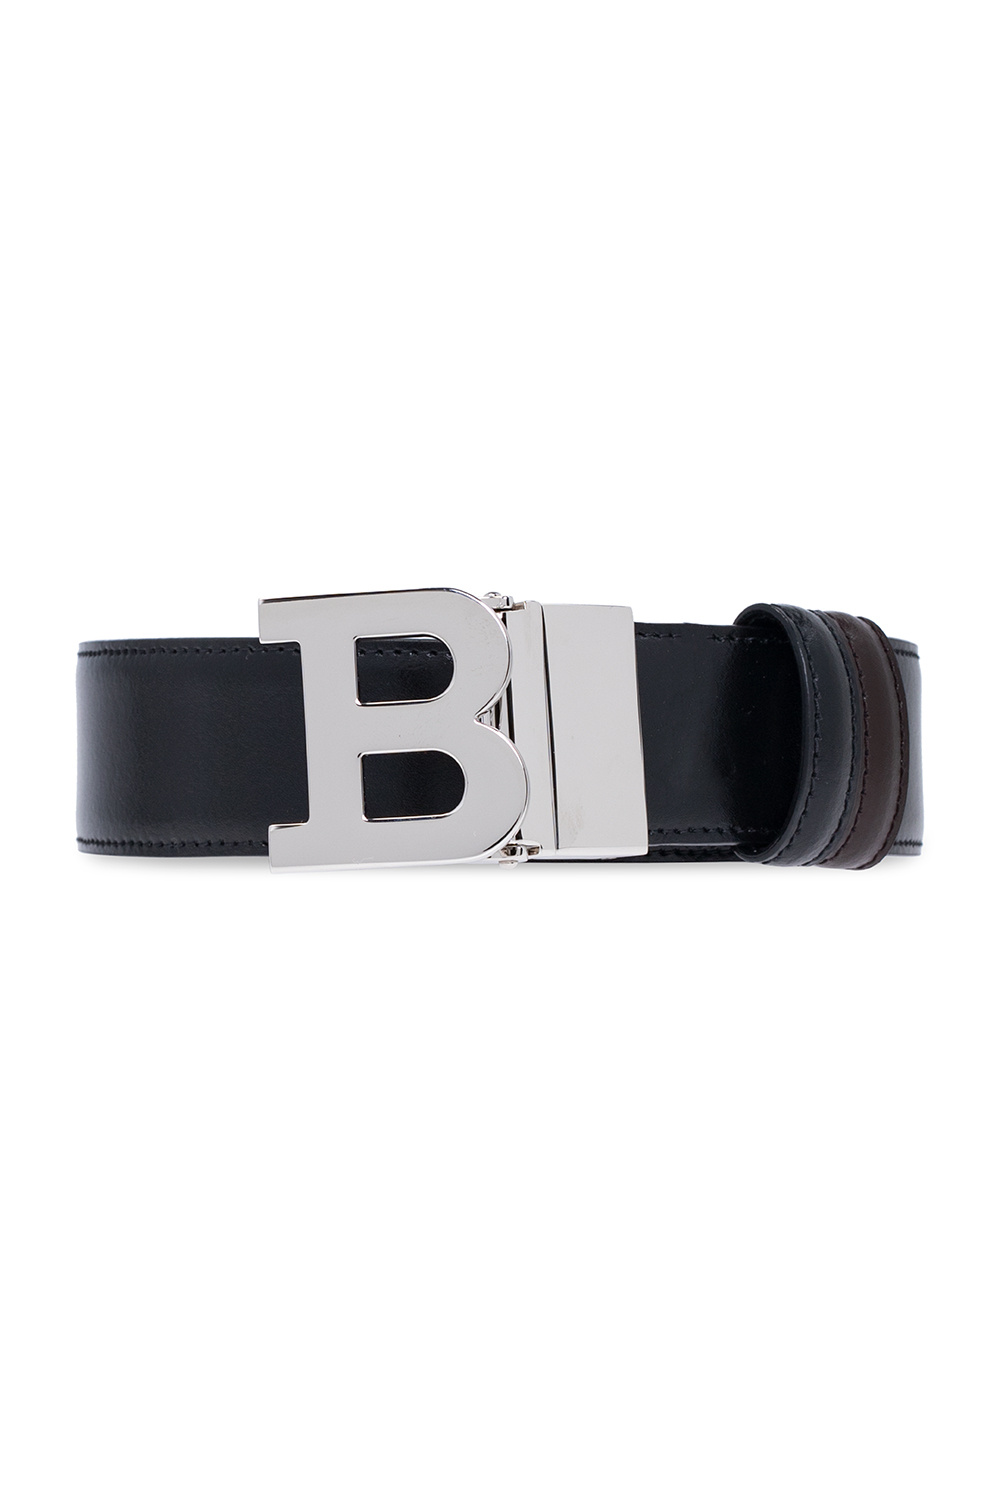 B-Buckle' reversible belt Bally - IetpShops Germany